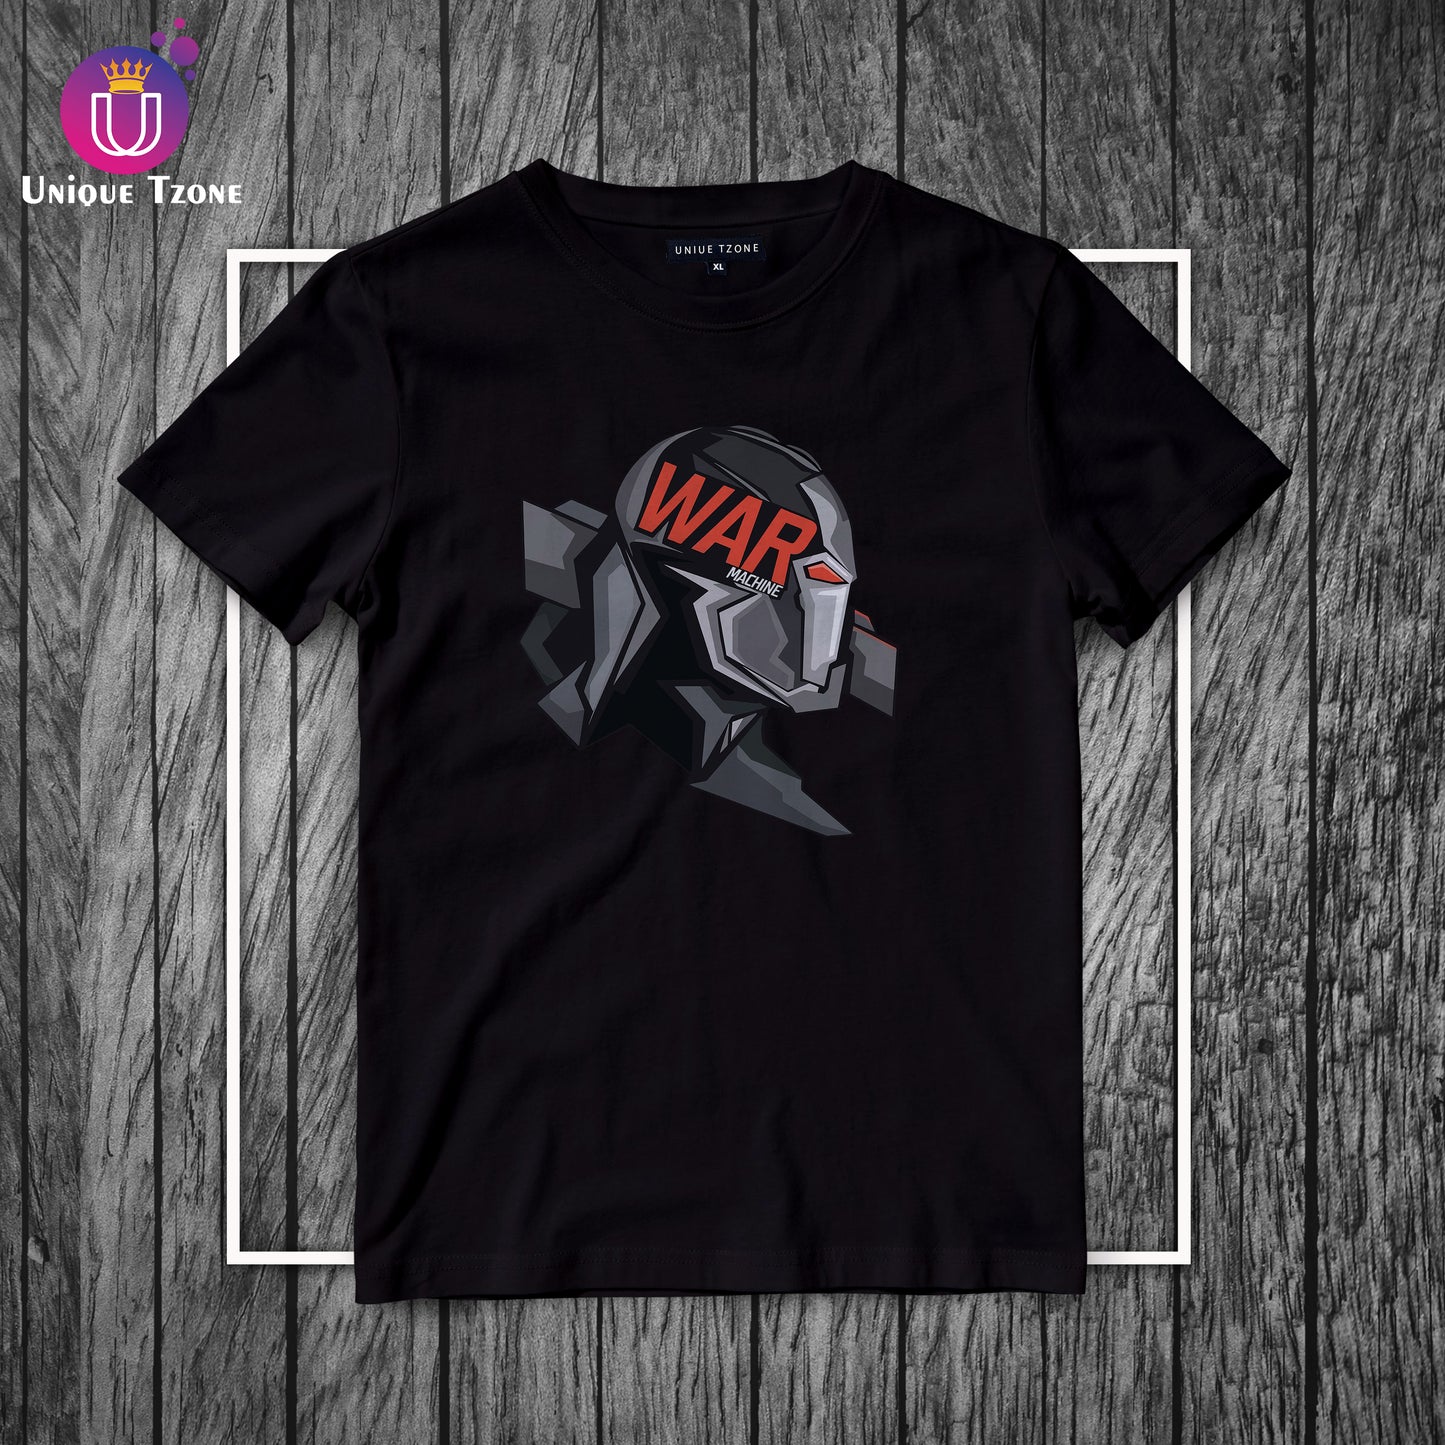 War Machine Marvel's Round Neck Half Sleeve Cotton T-shirt